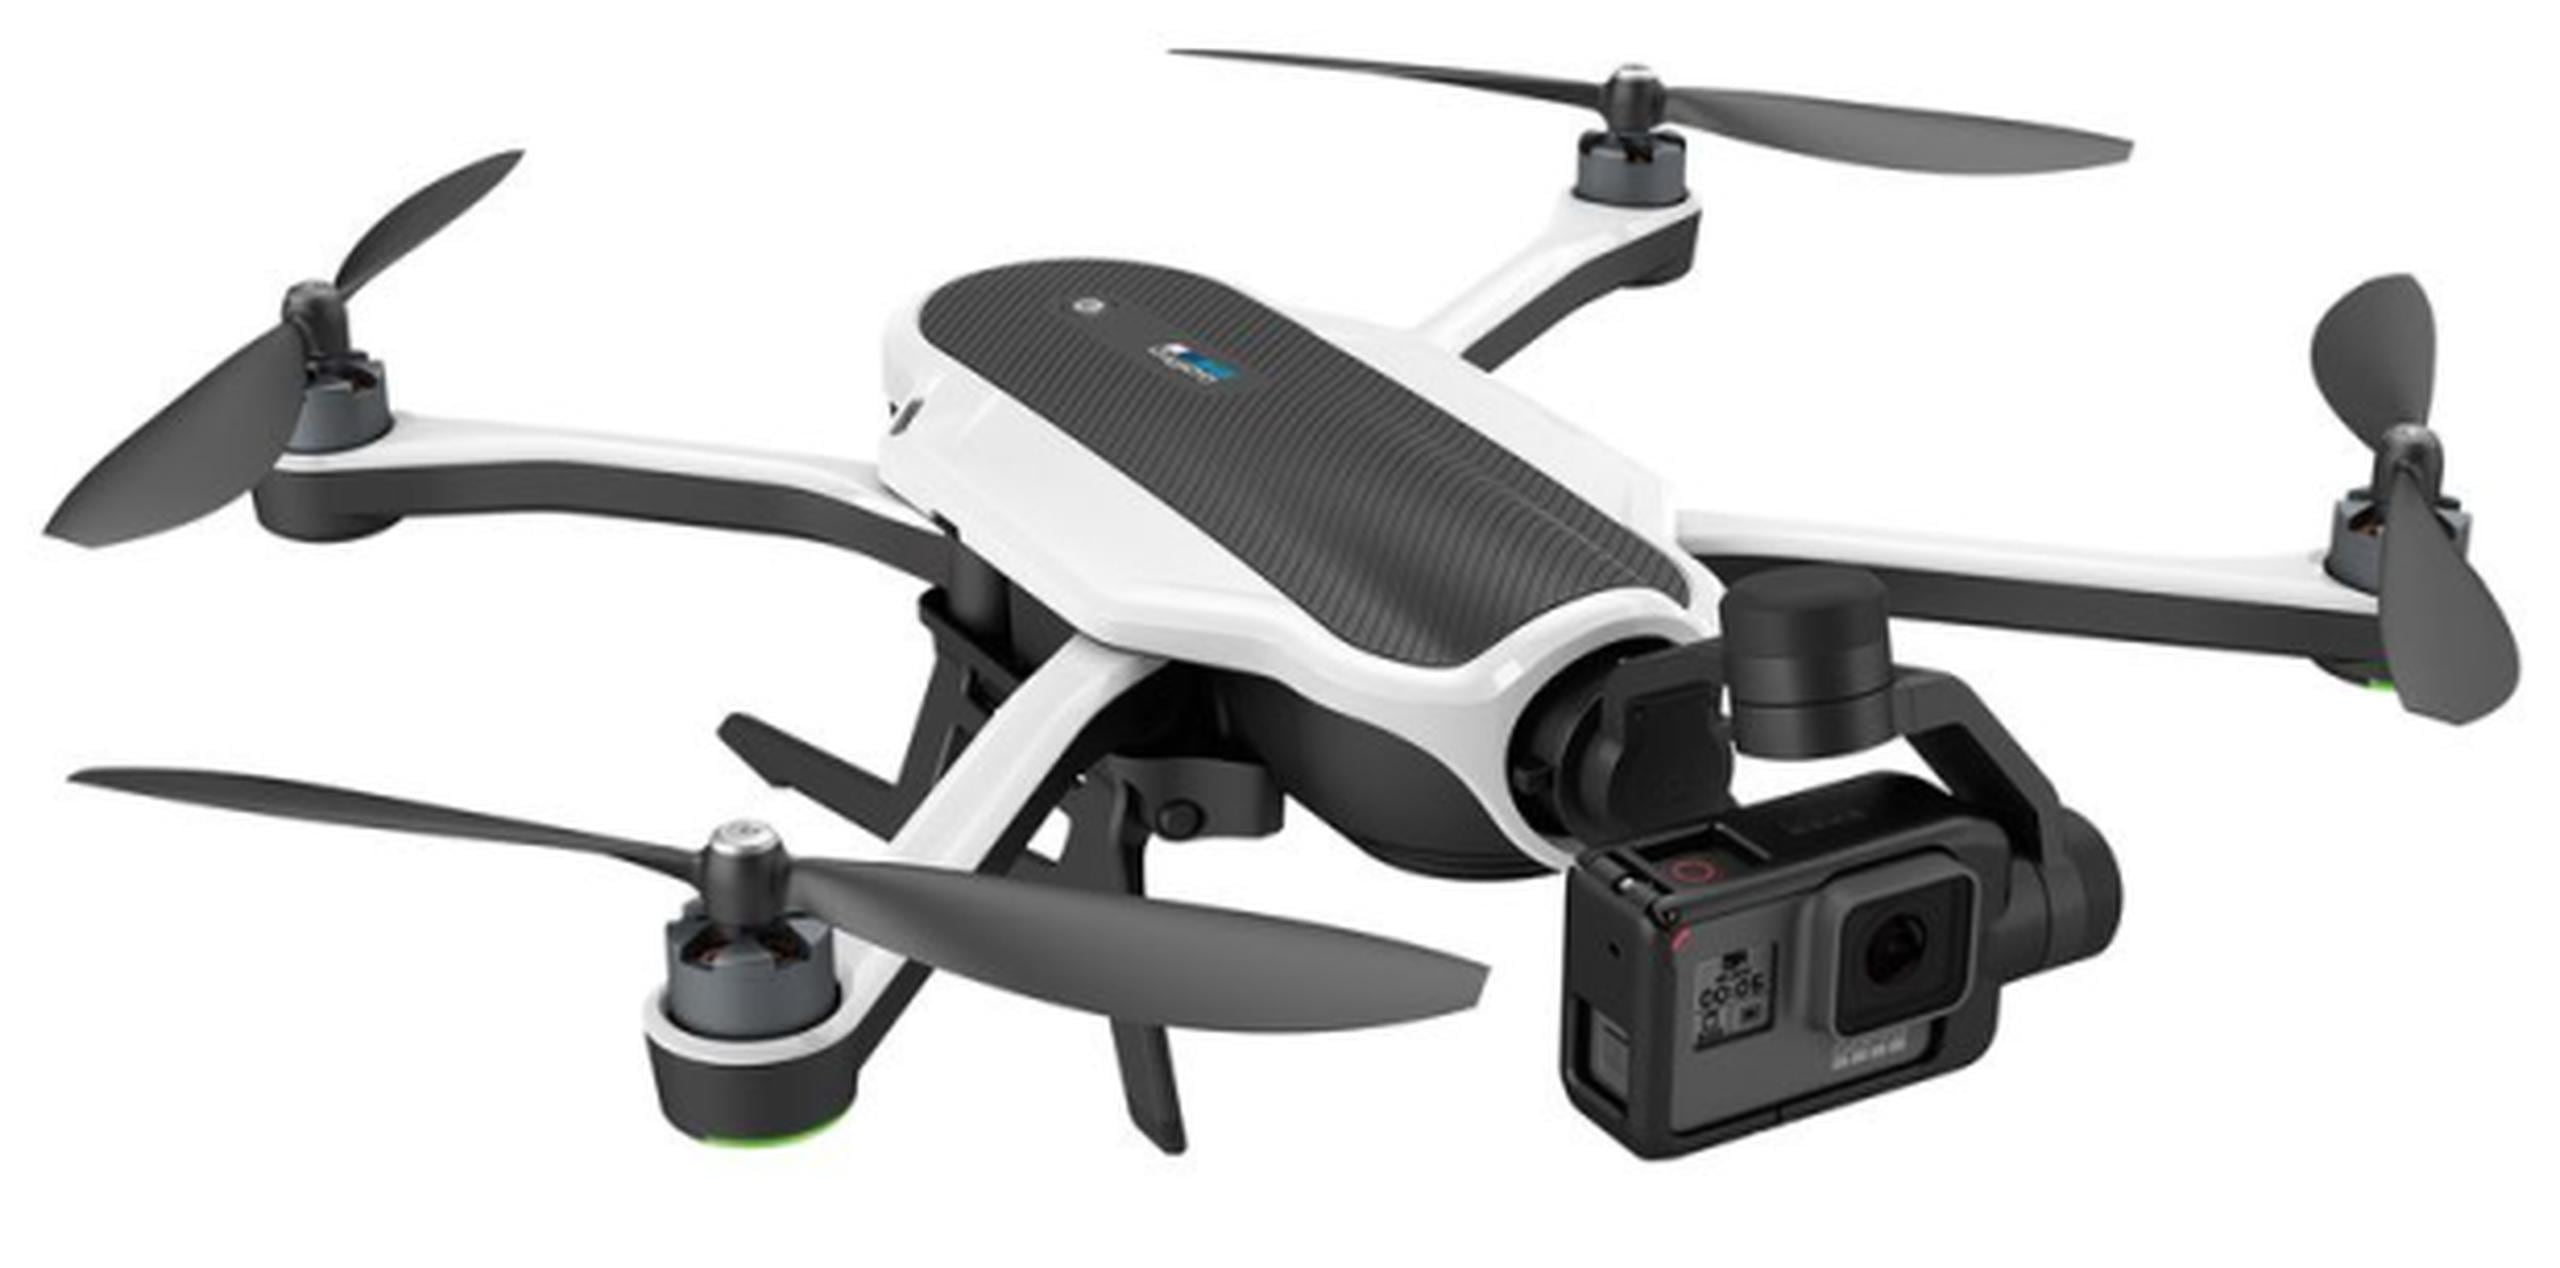 El valor referencial del dron es de $799.